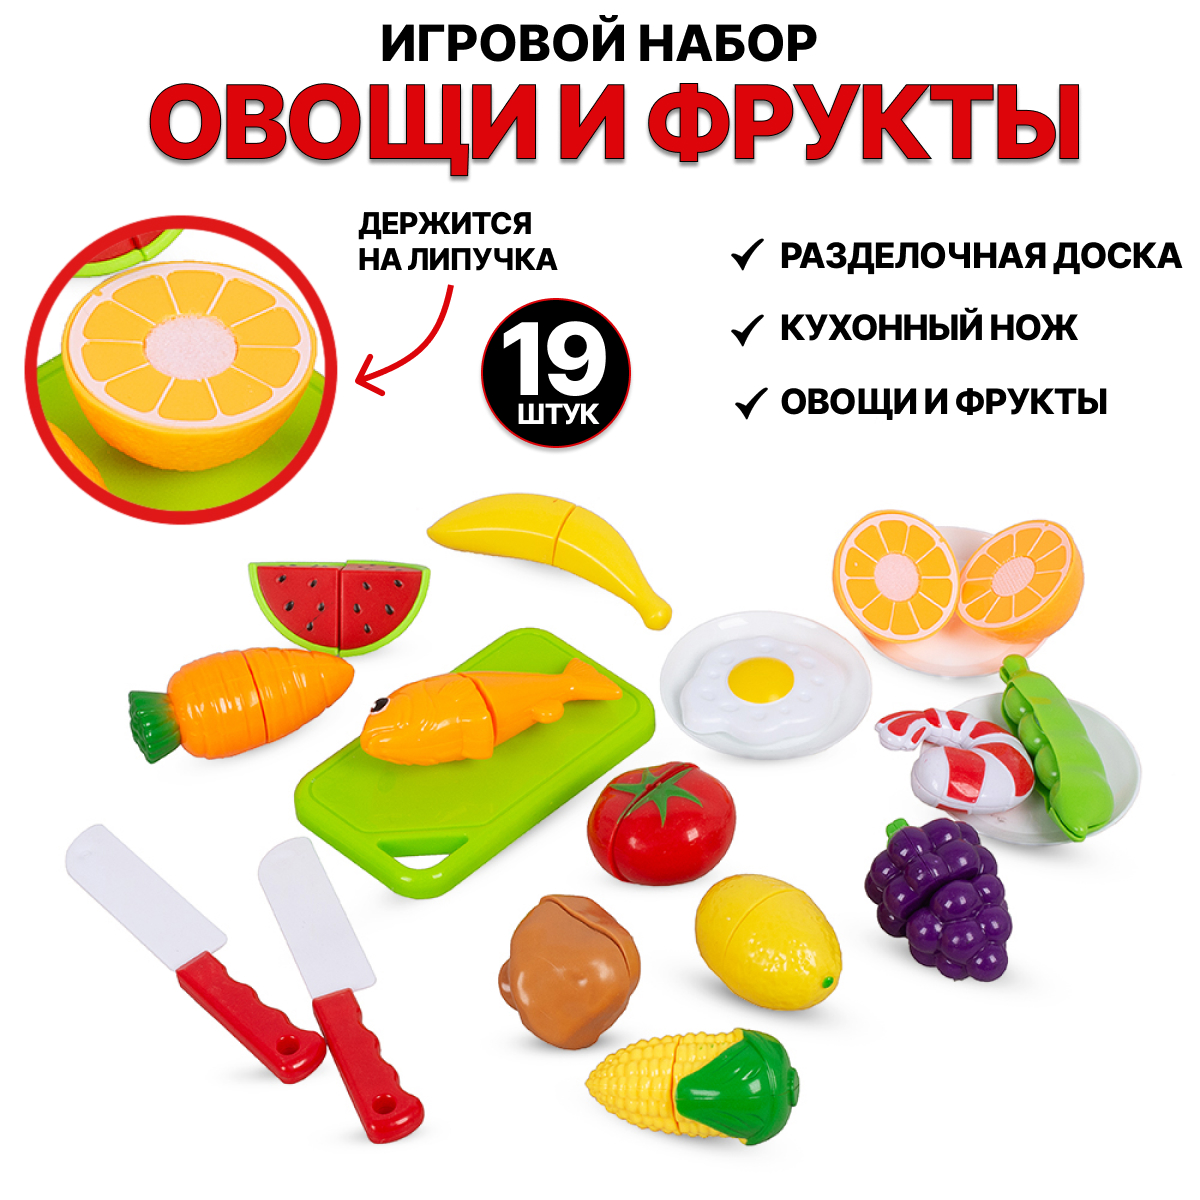 Игровой набор Tongde Овощи и фрукты для резки на липучках 19 предметов 666-85 donty tonty игровой набор продукты на липучках для резки